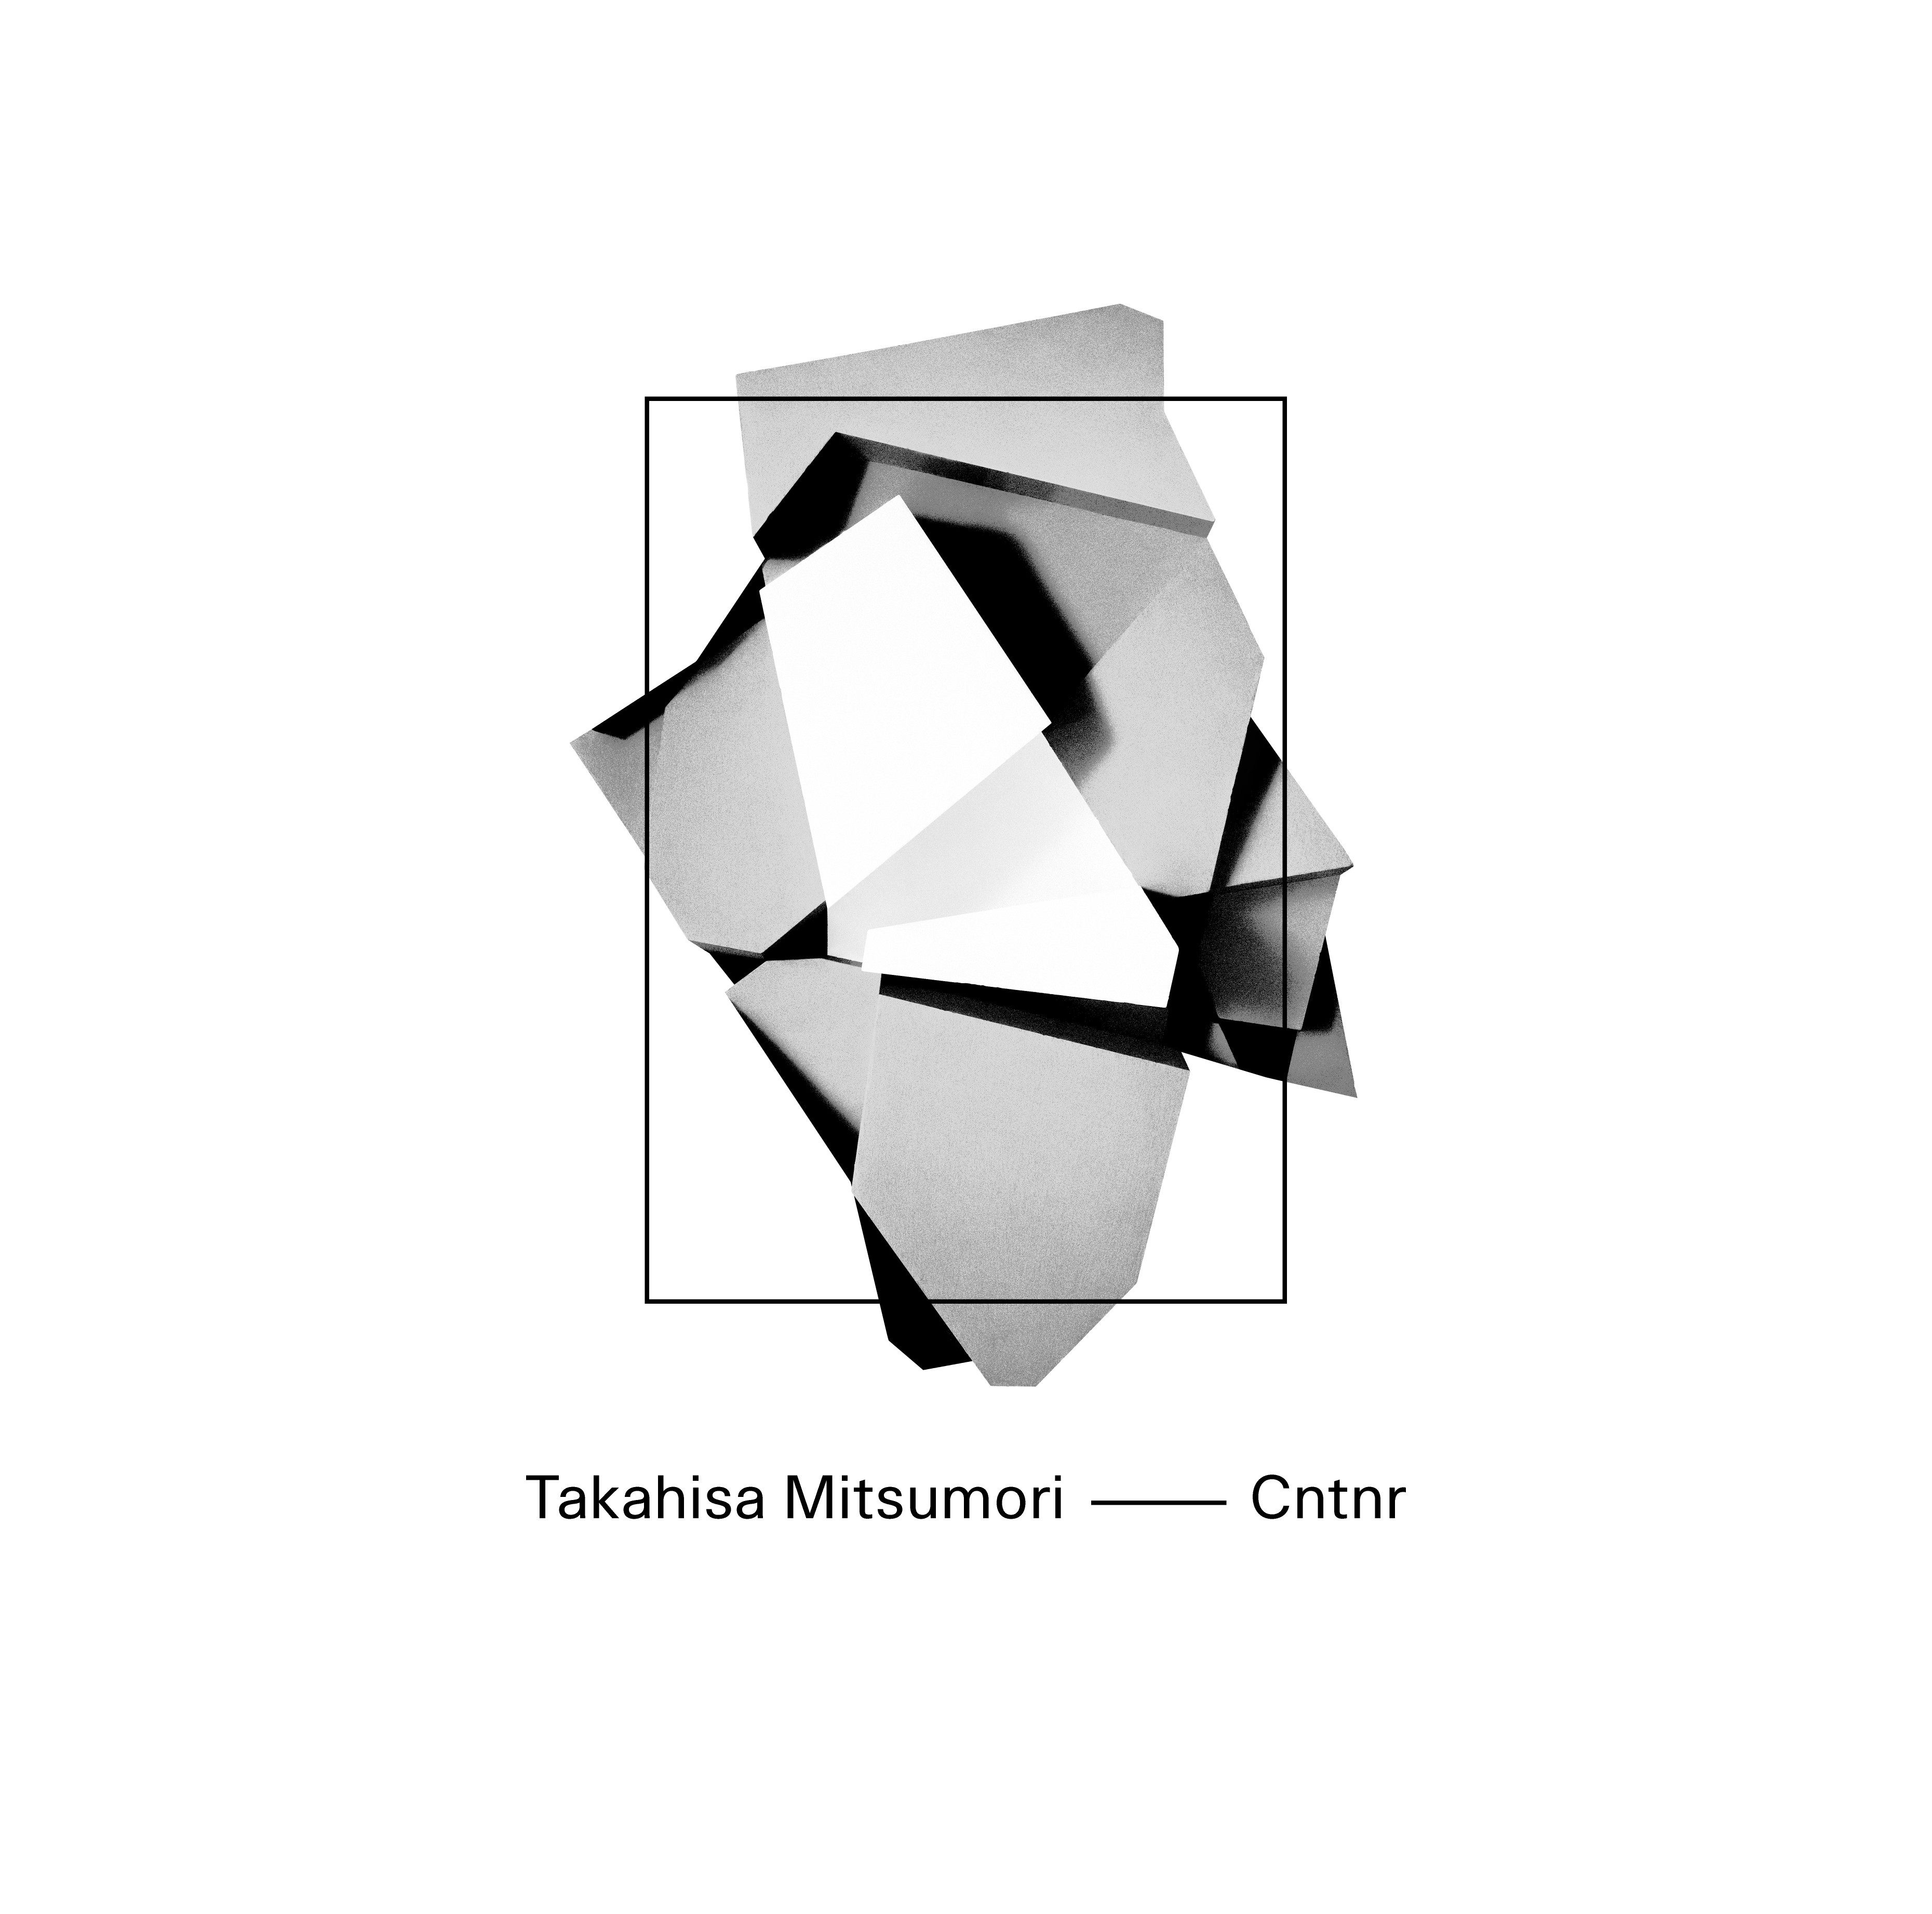 Takahisa Mitsumori — Cntnr